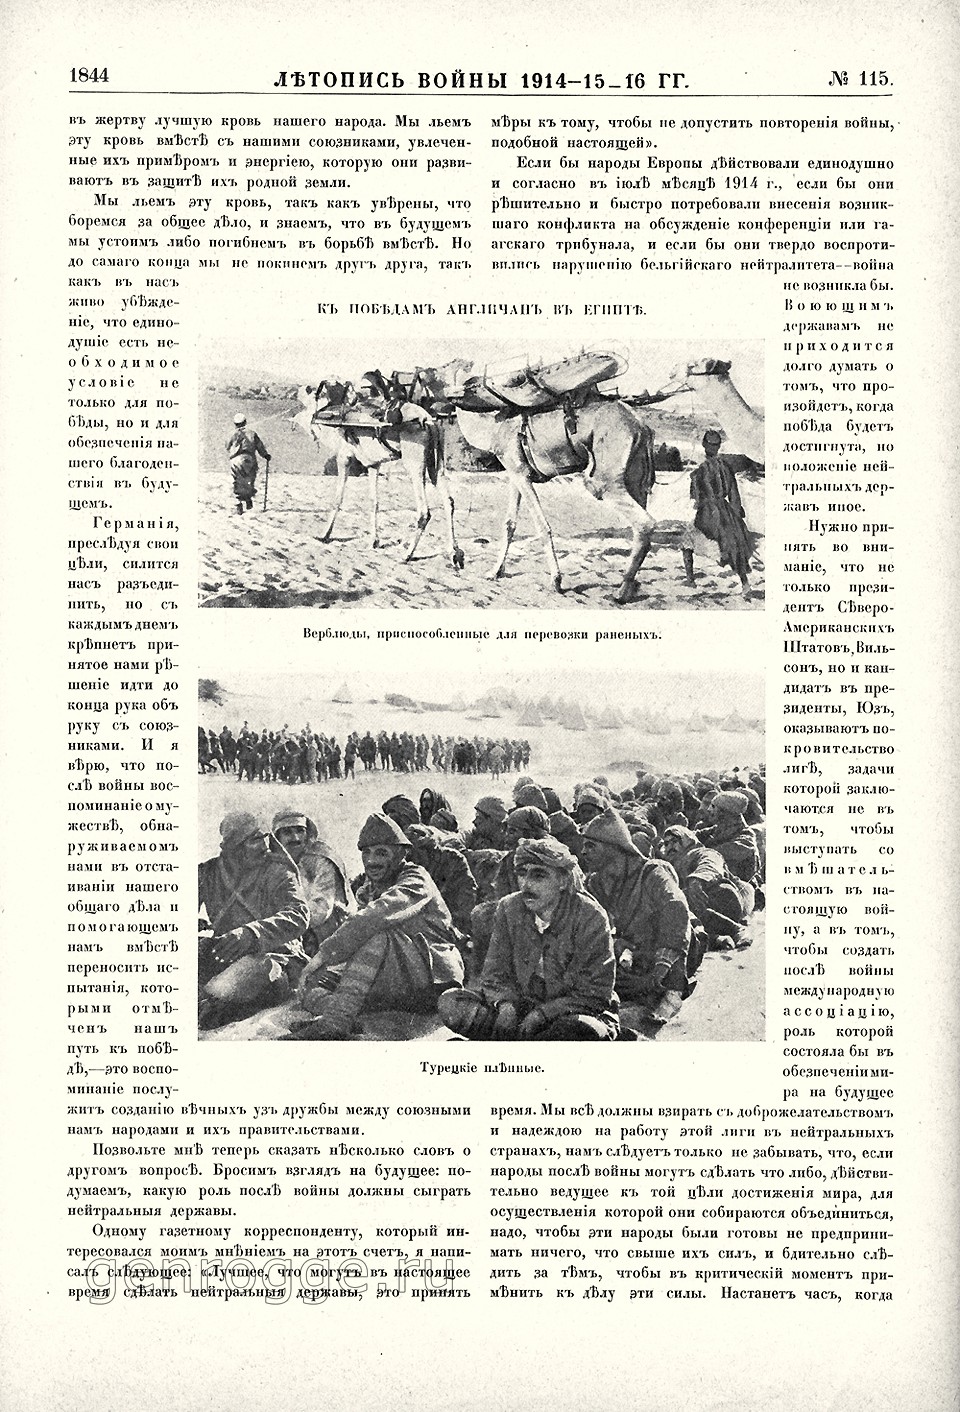   1914-15-16 . `1916 .,  115, . 1844